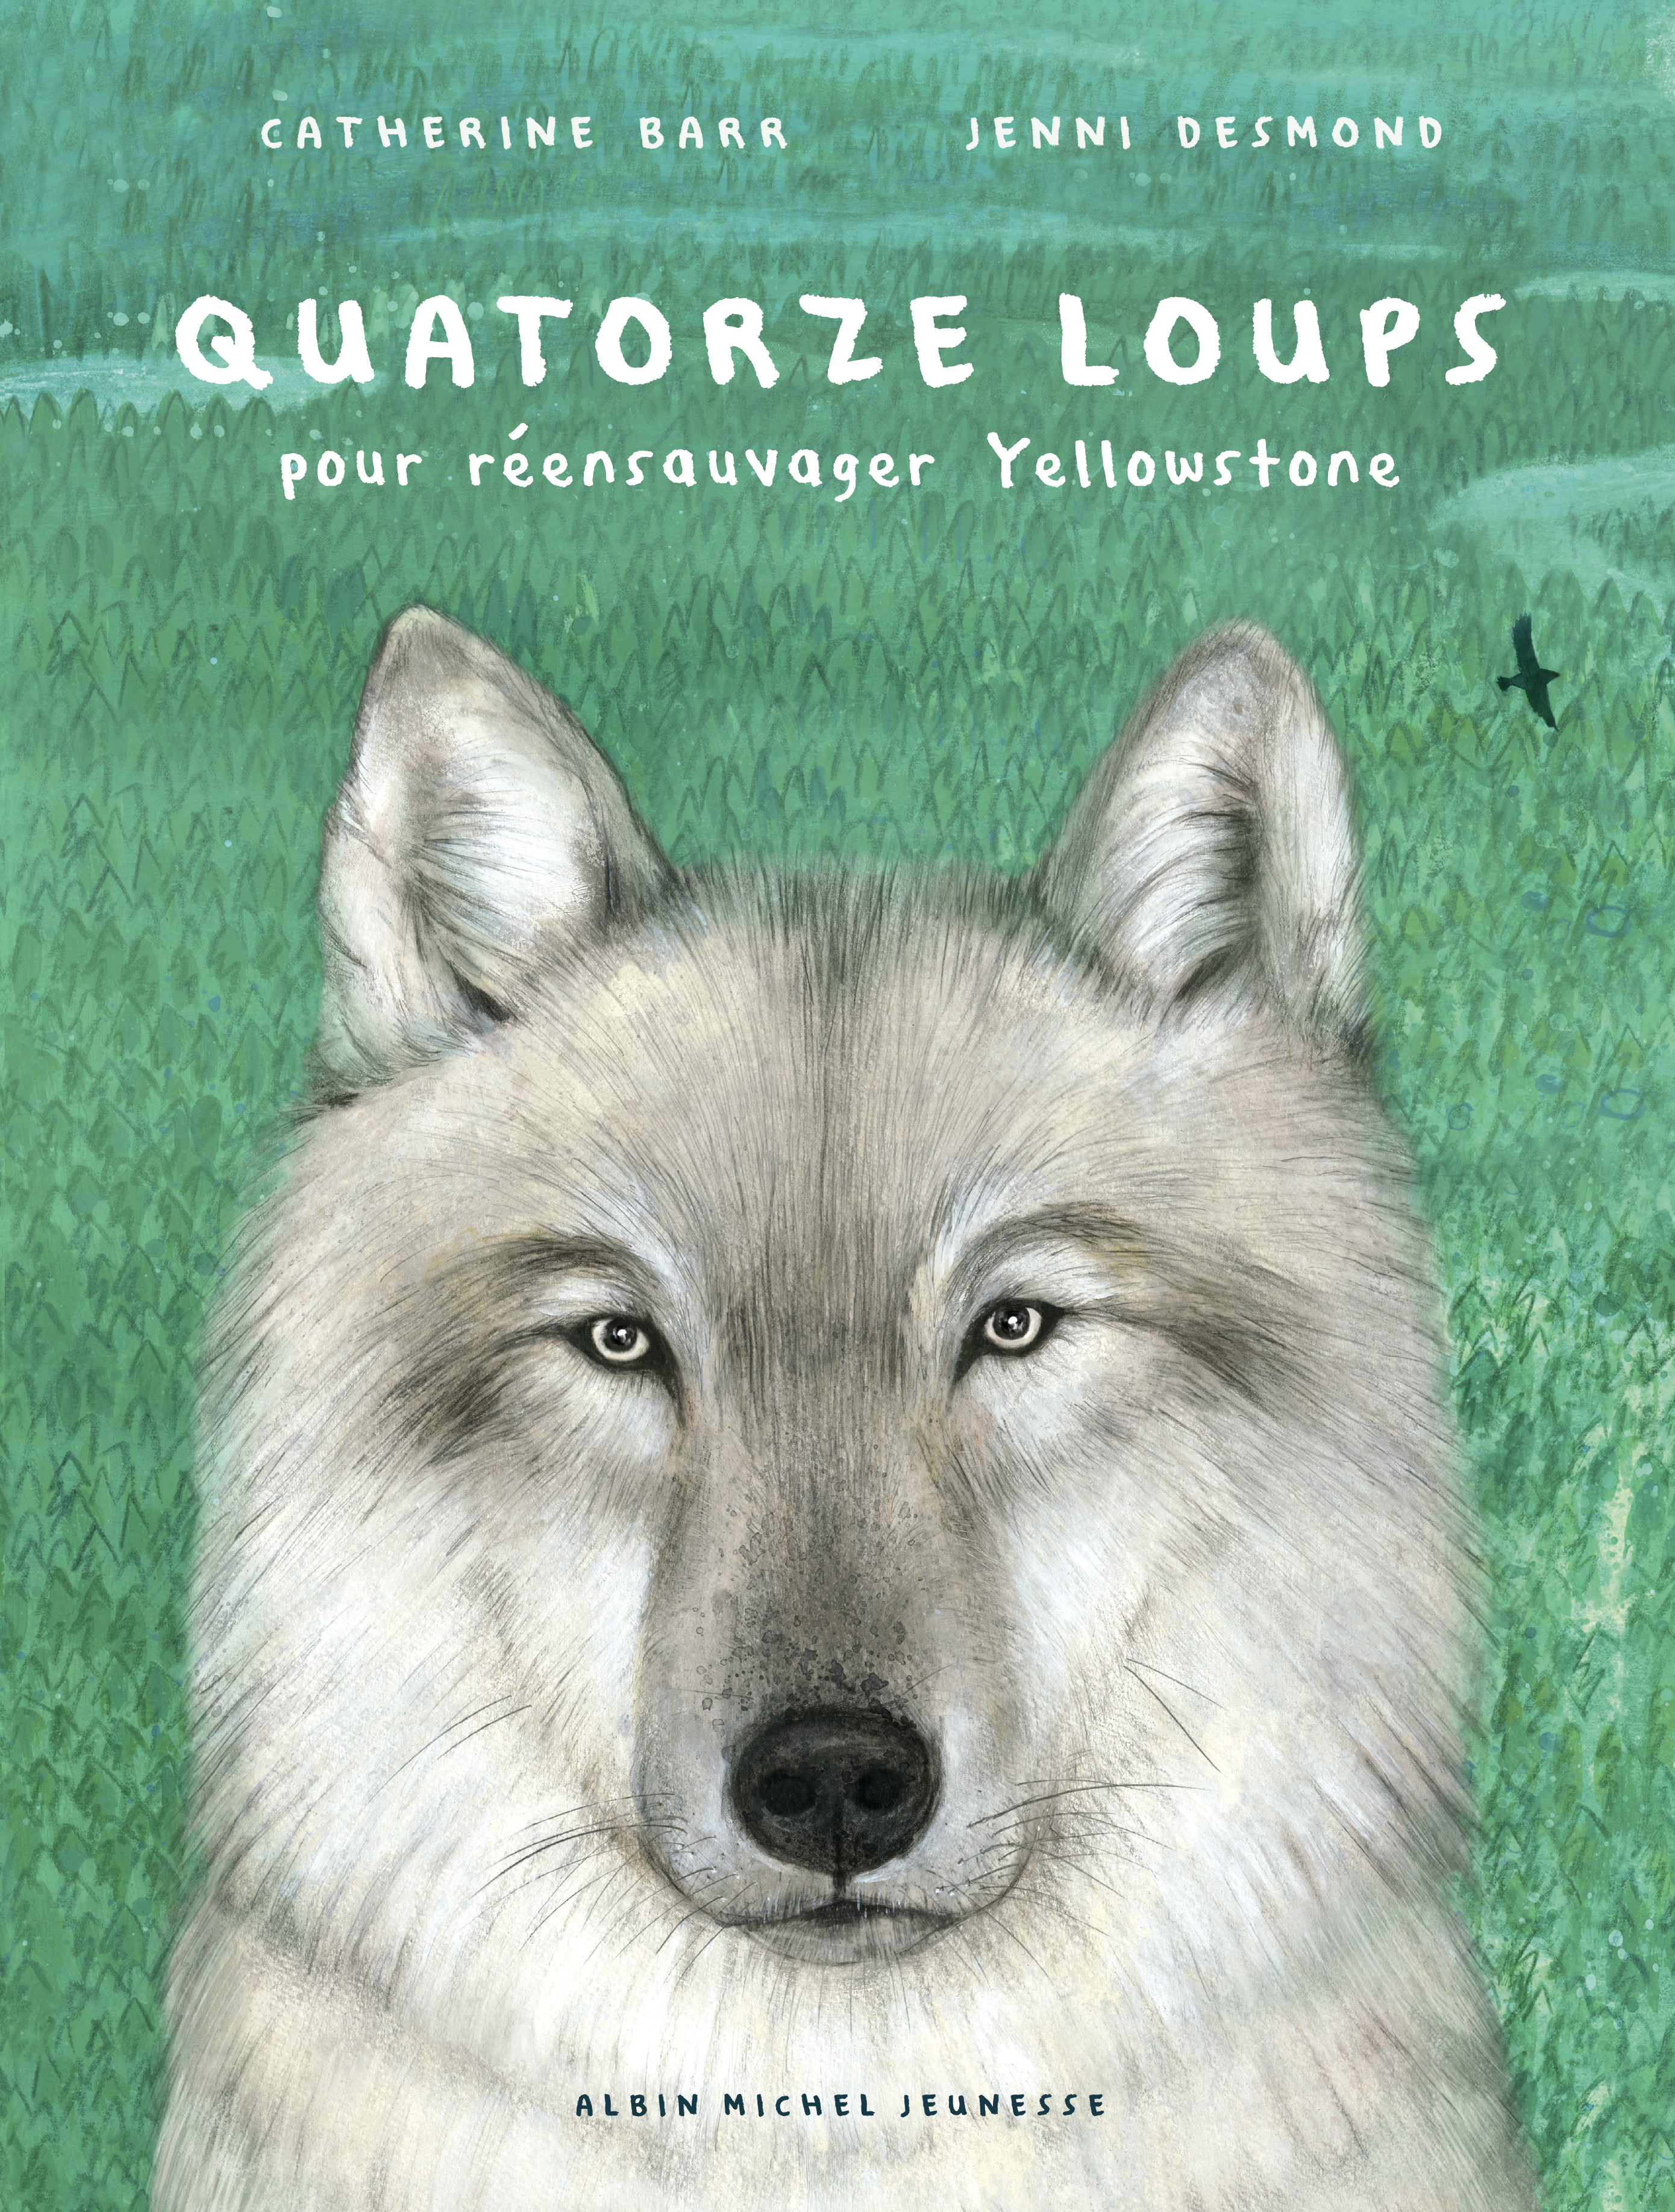 Le livre pour enfants de la semaine: Debout, le loup!